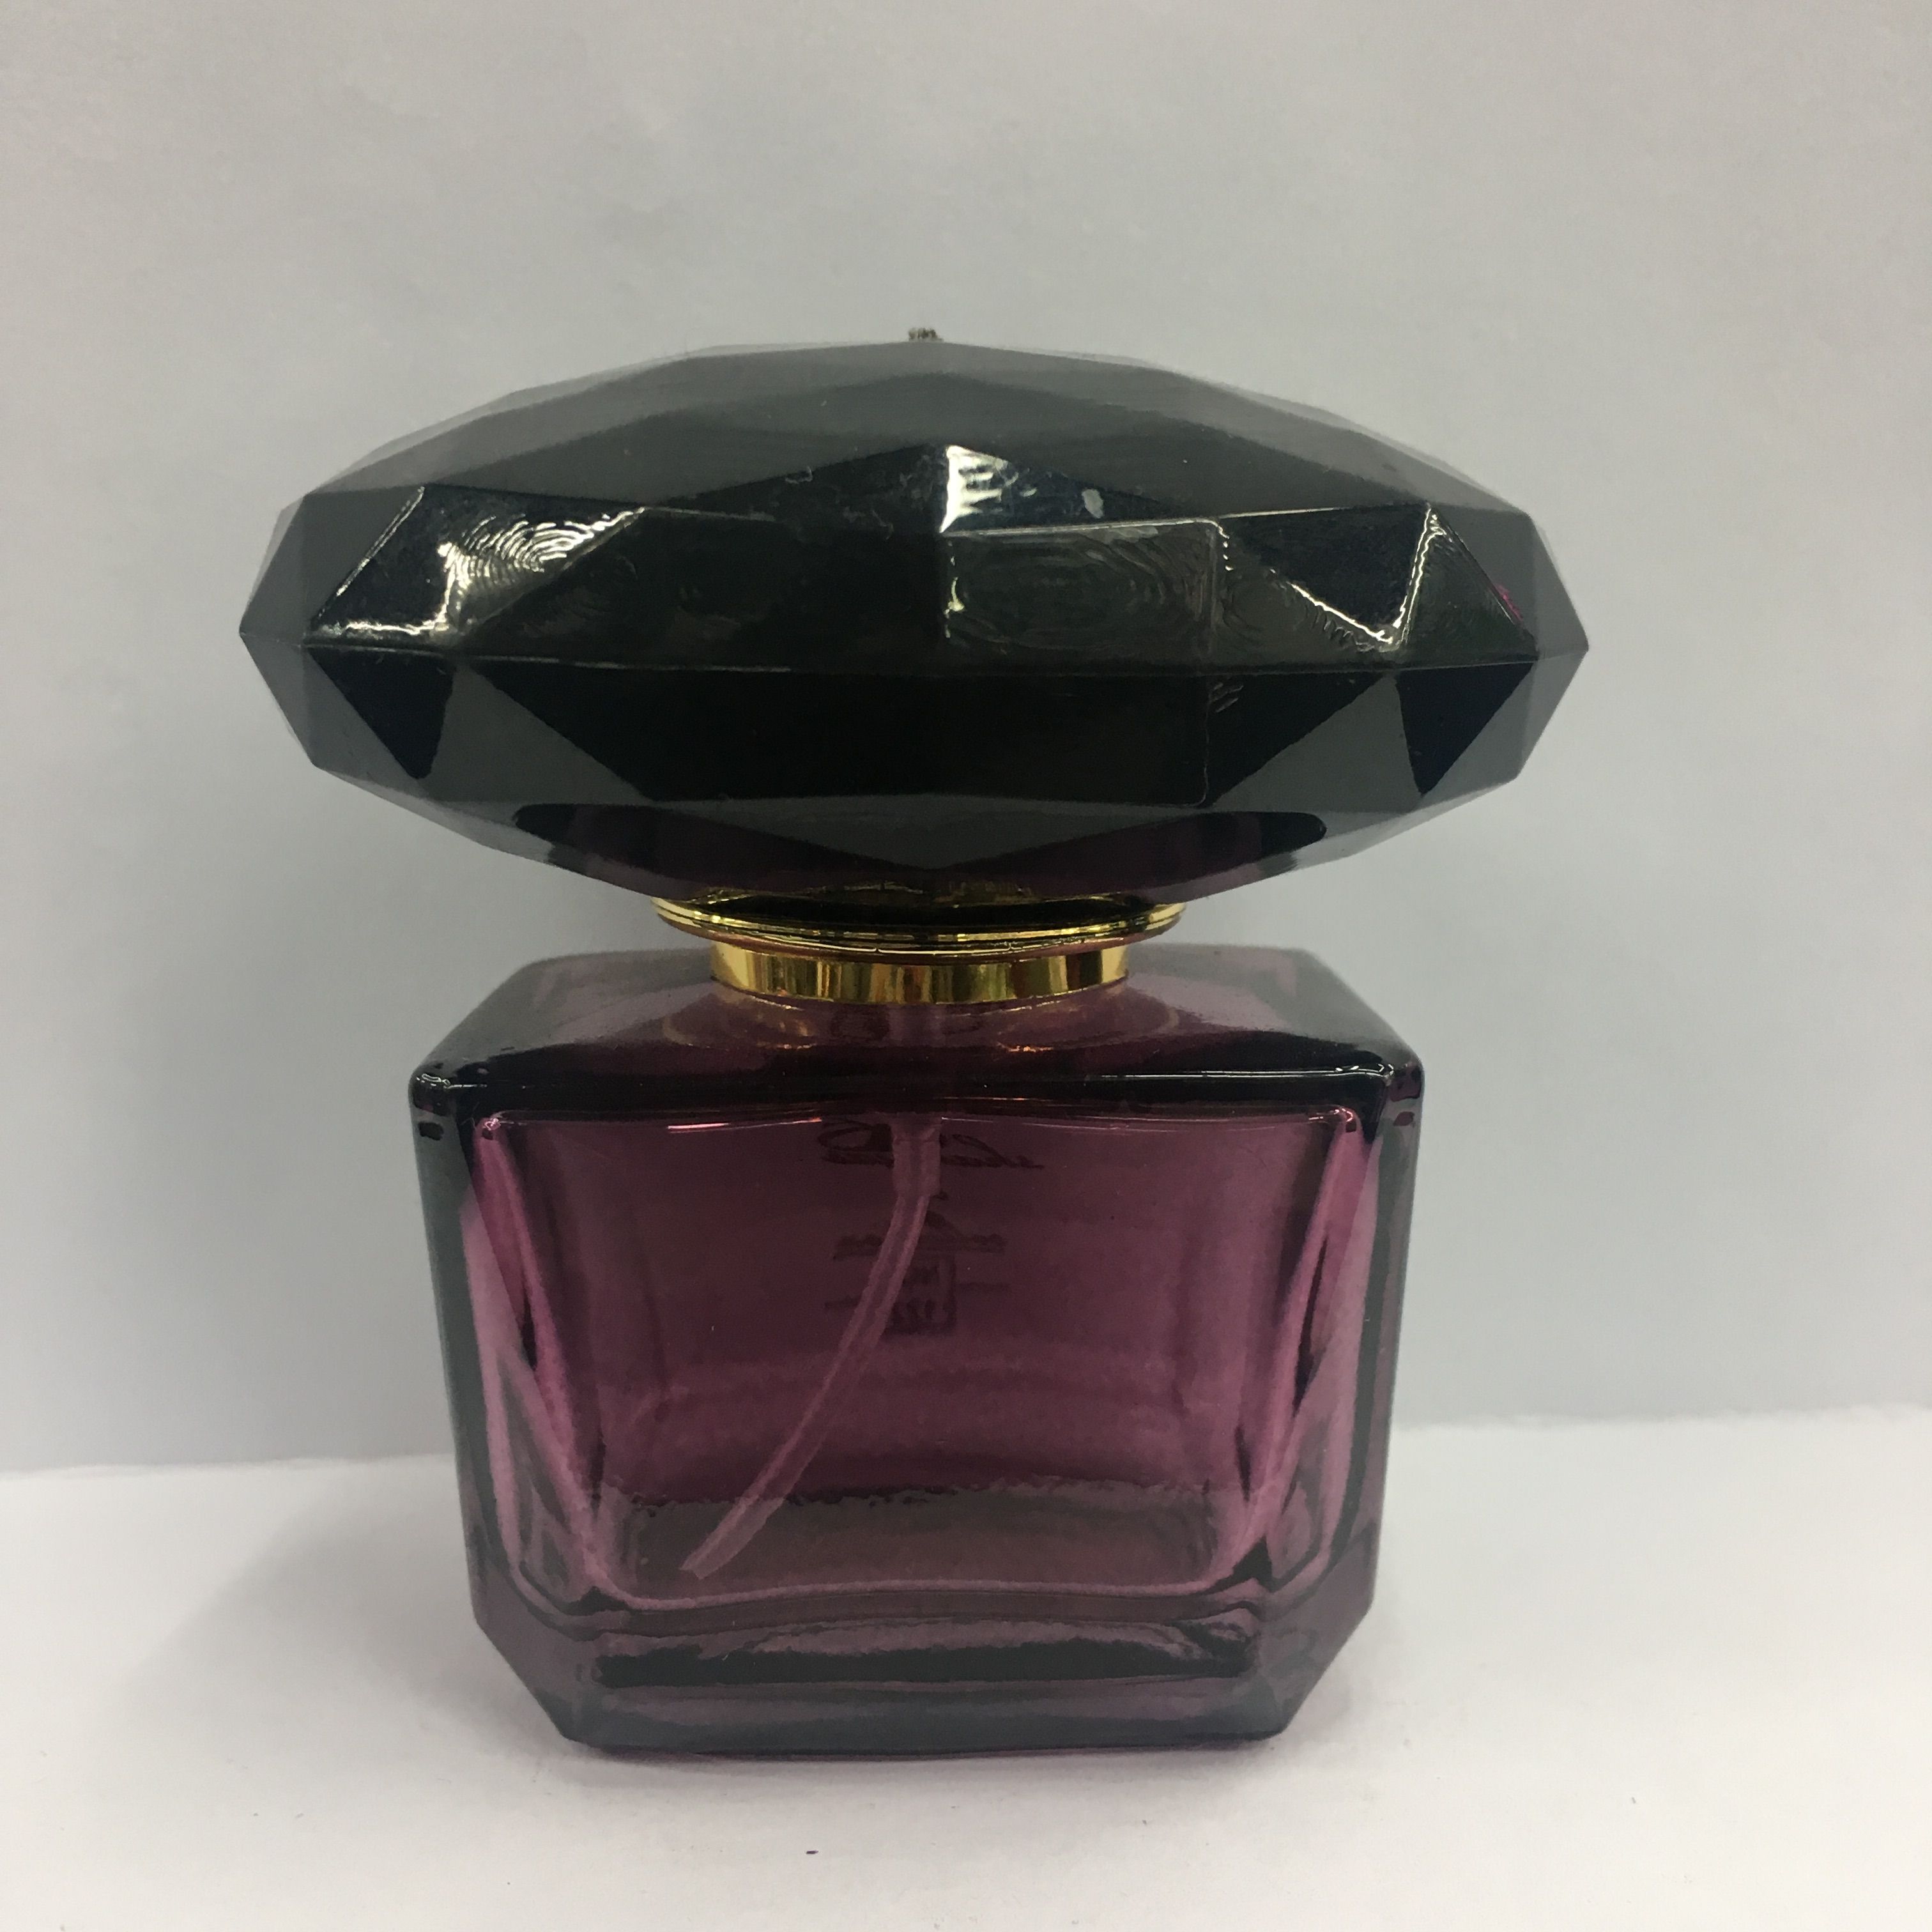 30ml新款玻璃香水瓶紫色典雅方形大头香水分装瓶图